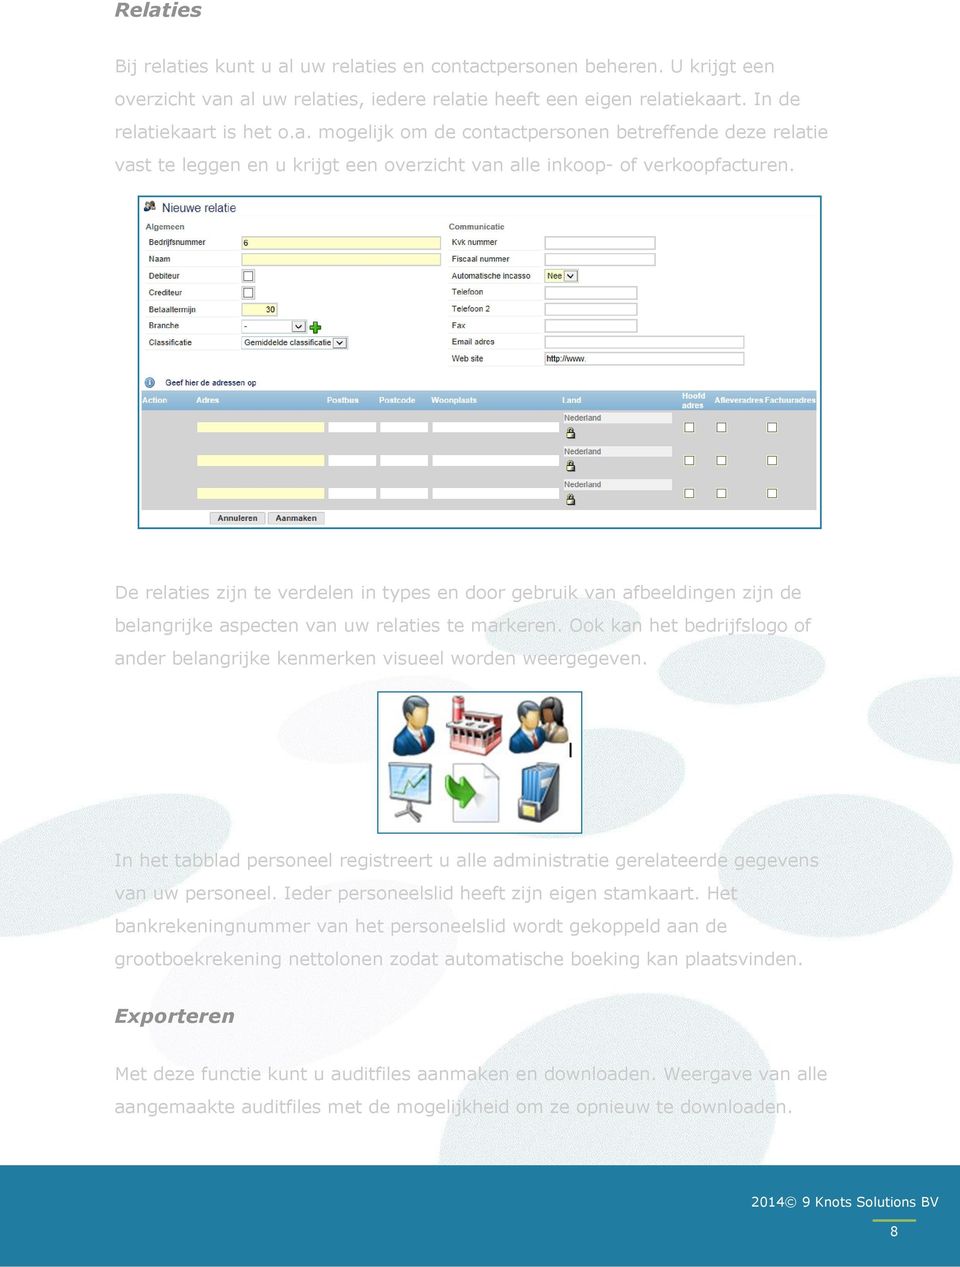 Ook kan het bedrijfslogo of ander belangrijke kenmerken visueel worden weergegeven. In het tabblad personeel registreert u alle administratie gerelateerde gegevens van uw personeel.